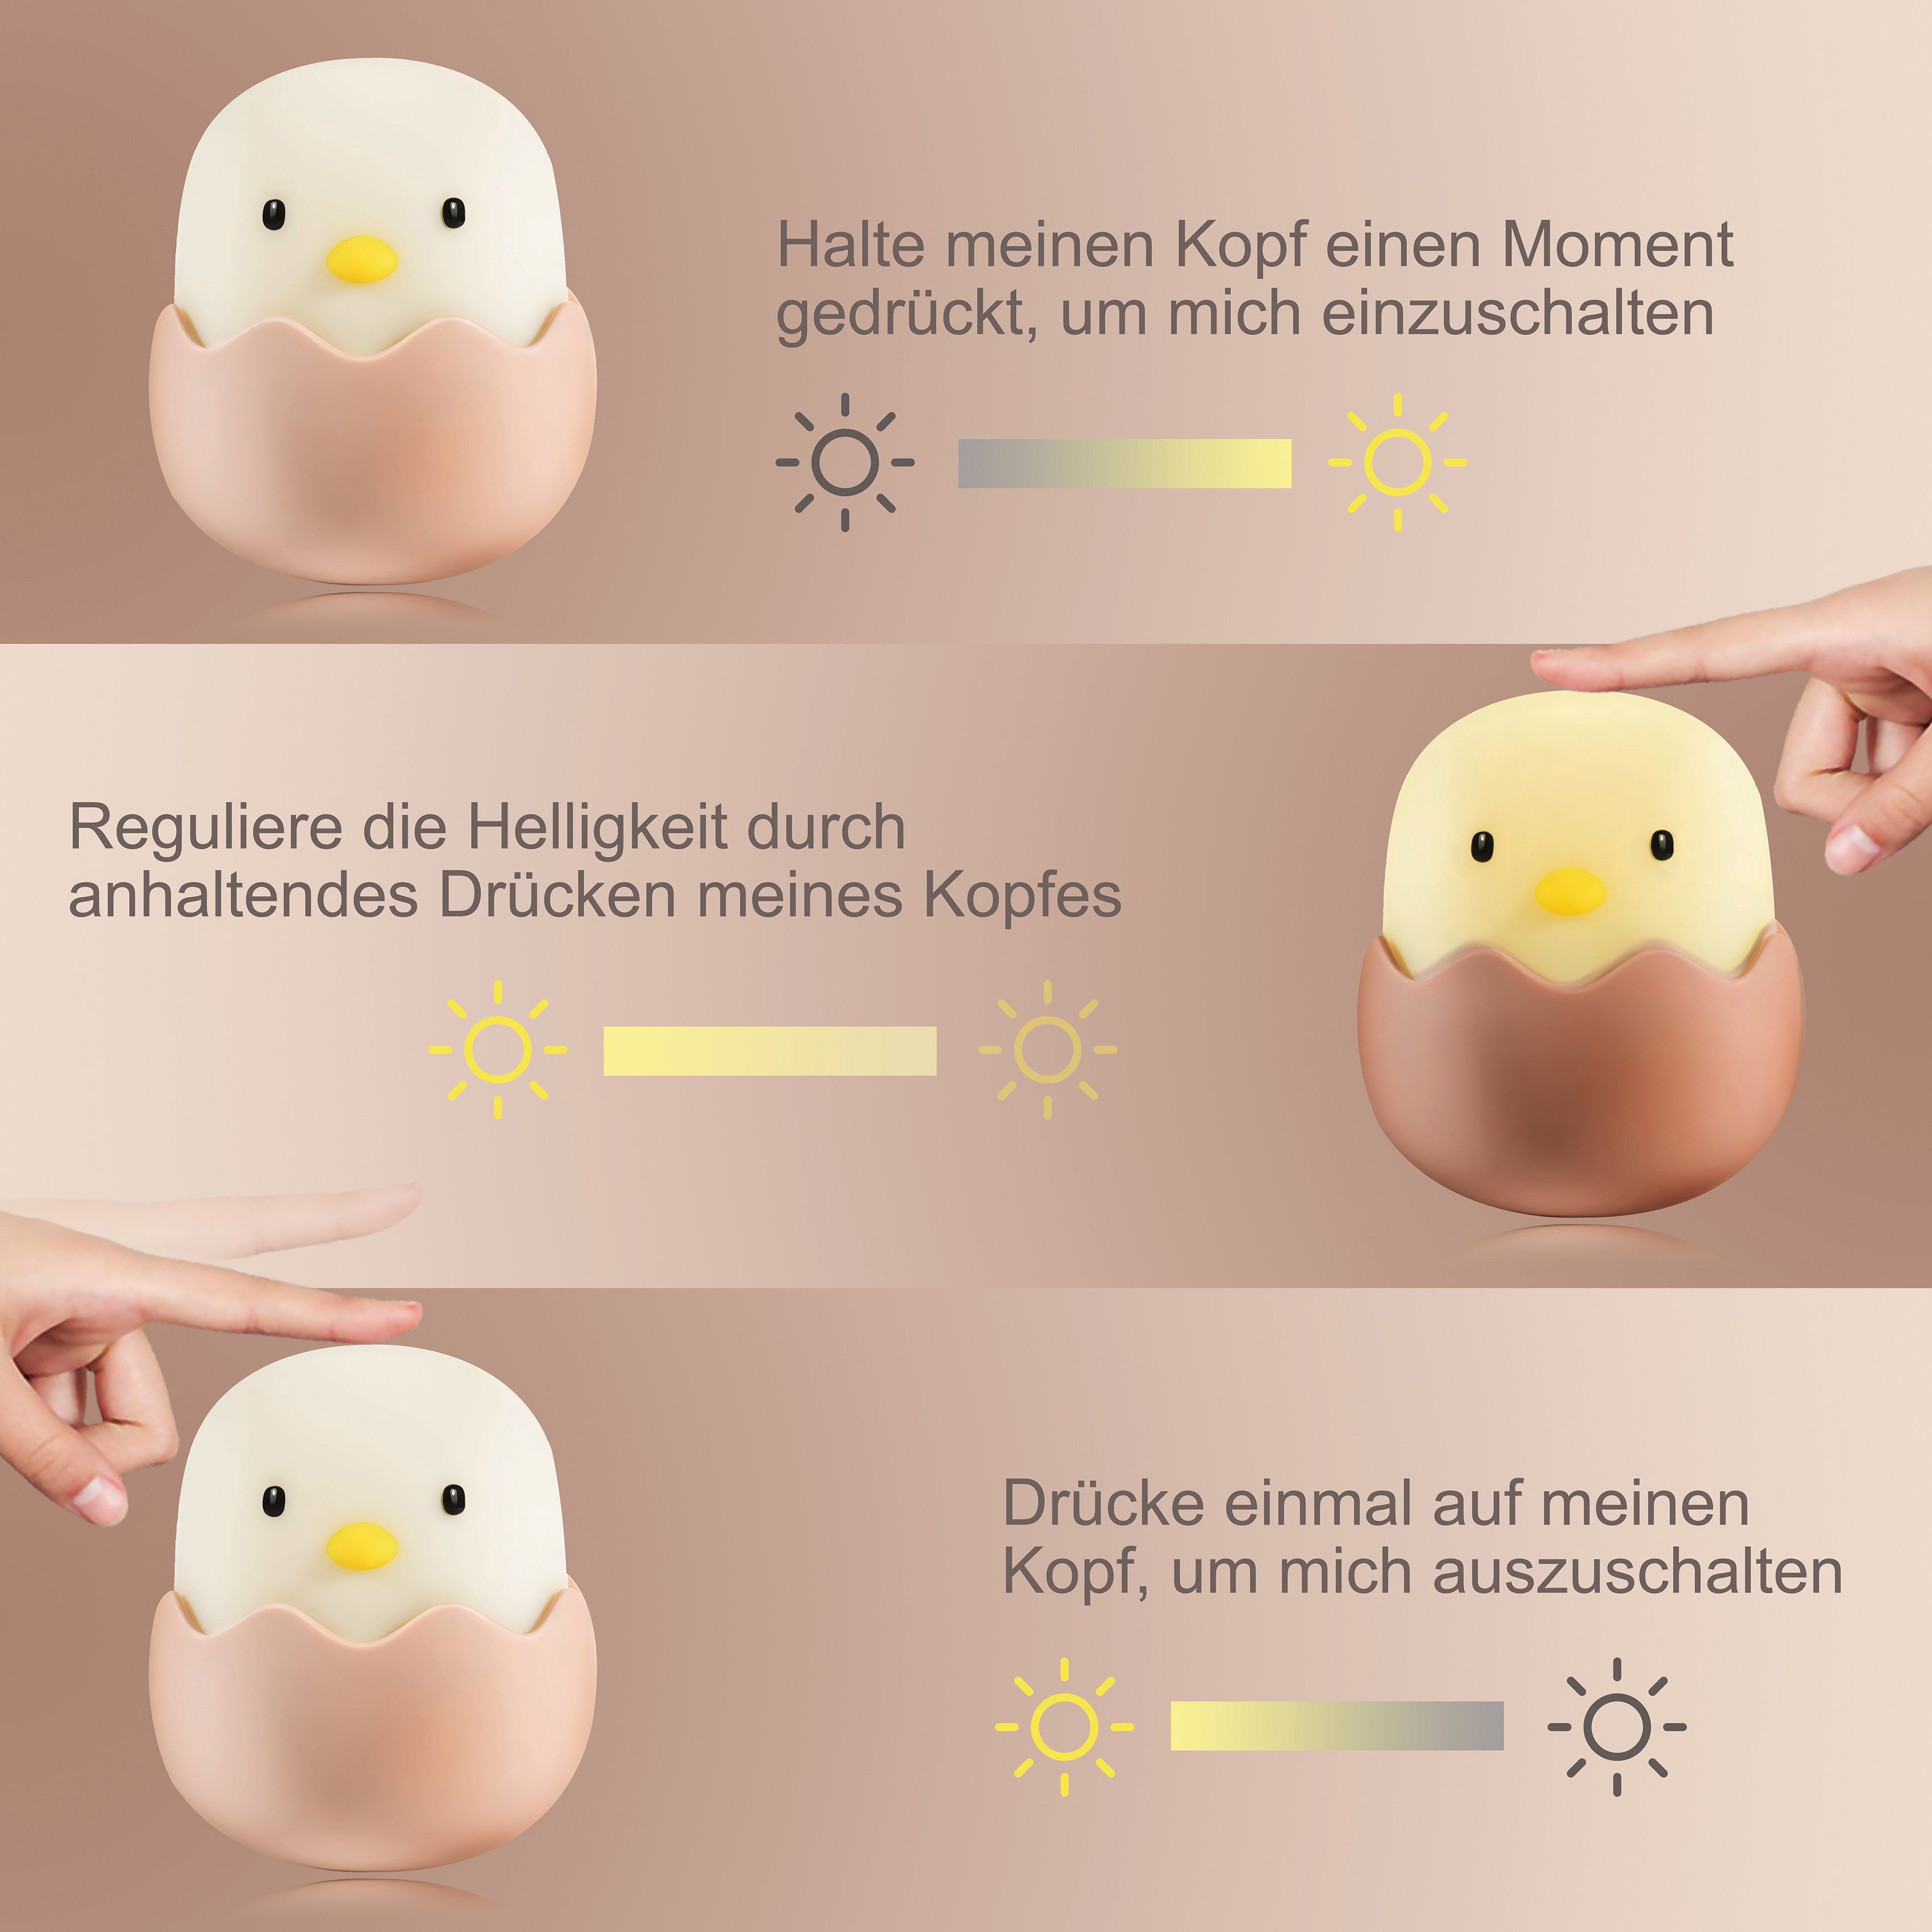 niermann LED Nachtlicht Eggy Egg Nachtlicht integriert, Egg, Eggy fest LED